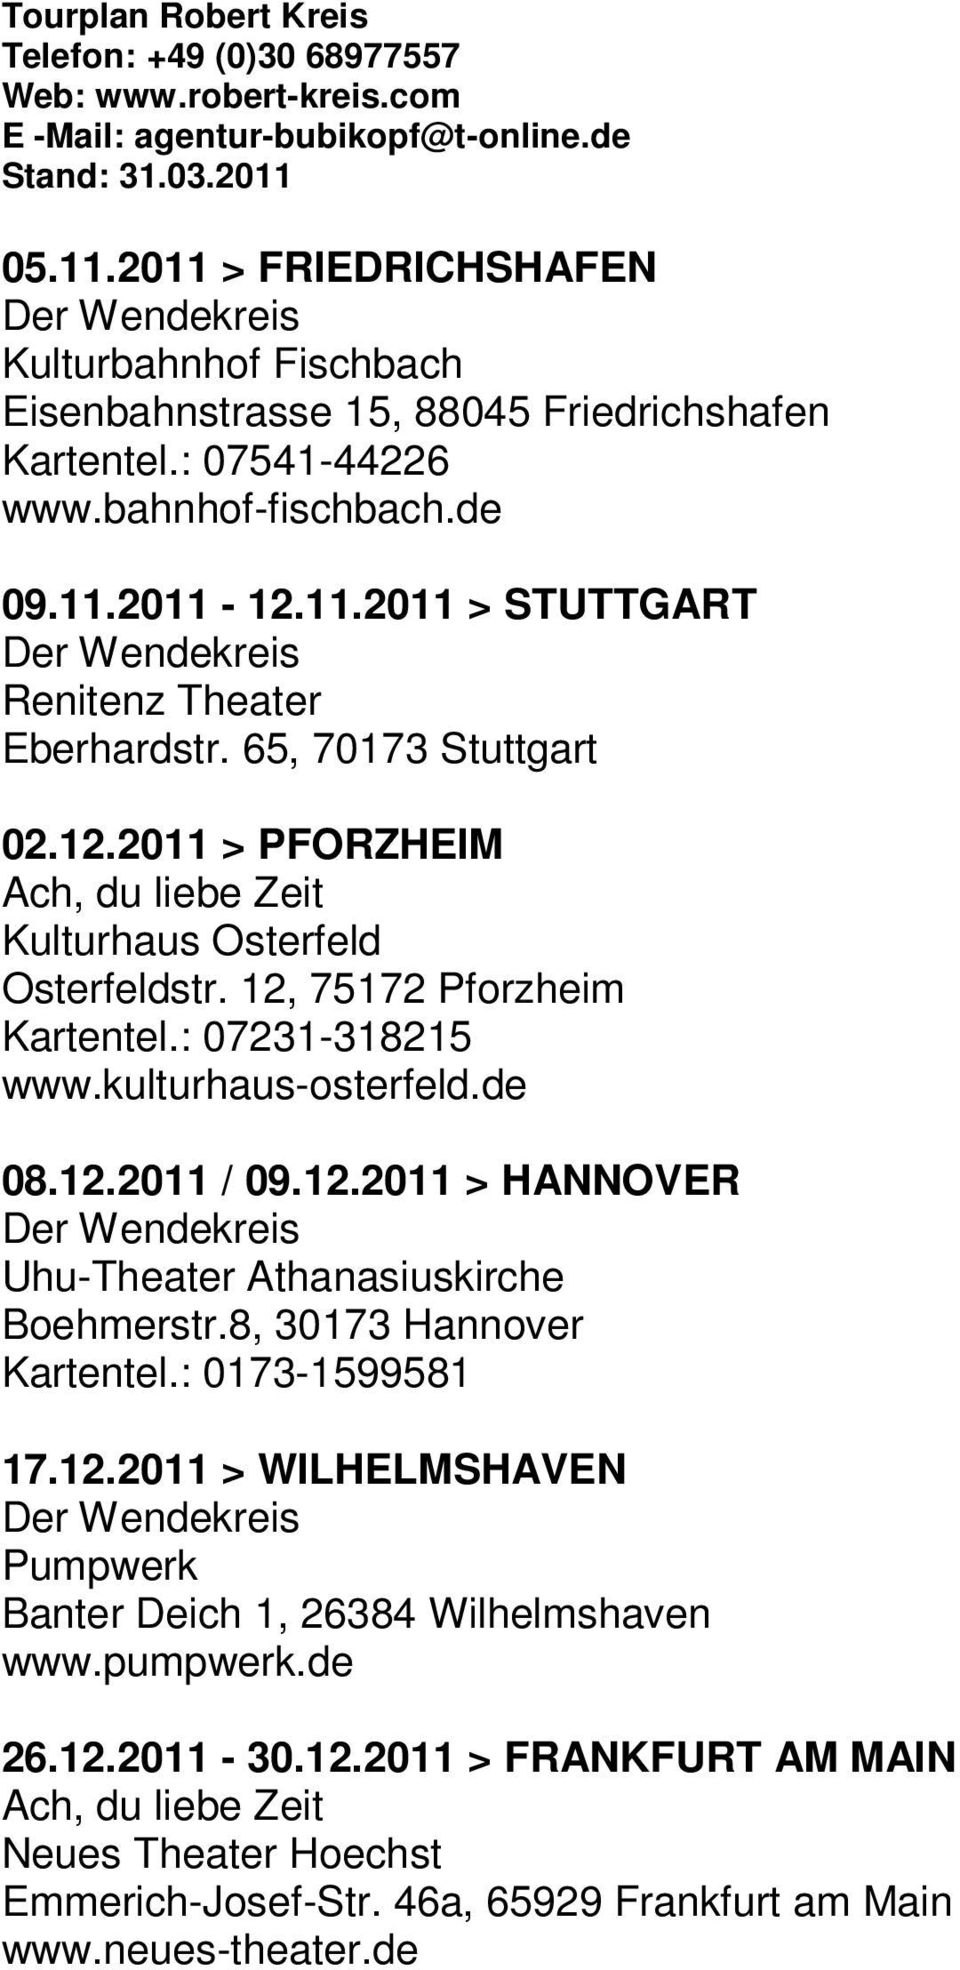 8, 30173 Hannover Kartentel.: 0173-1599581 17.12.2011 > WILHELMSHAVEN Pumpwerk Banter Deich 1, 26384 Wilhelmshaven www.pumpwerk.de 26.12.2011-30.12.2011 > FRANKFURT AM MAIN Neues Theater Hoechst Emmerich-Josef-Str.